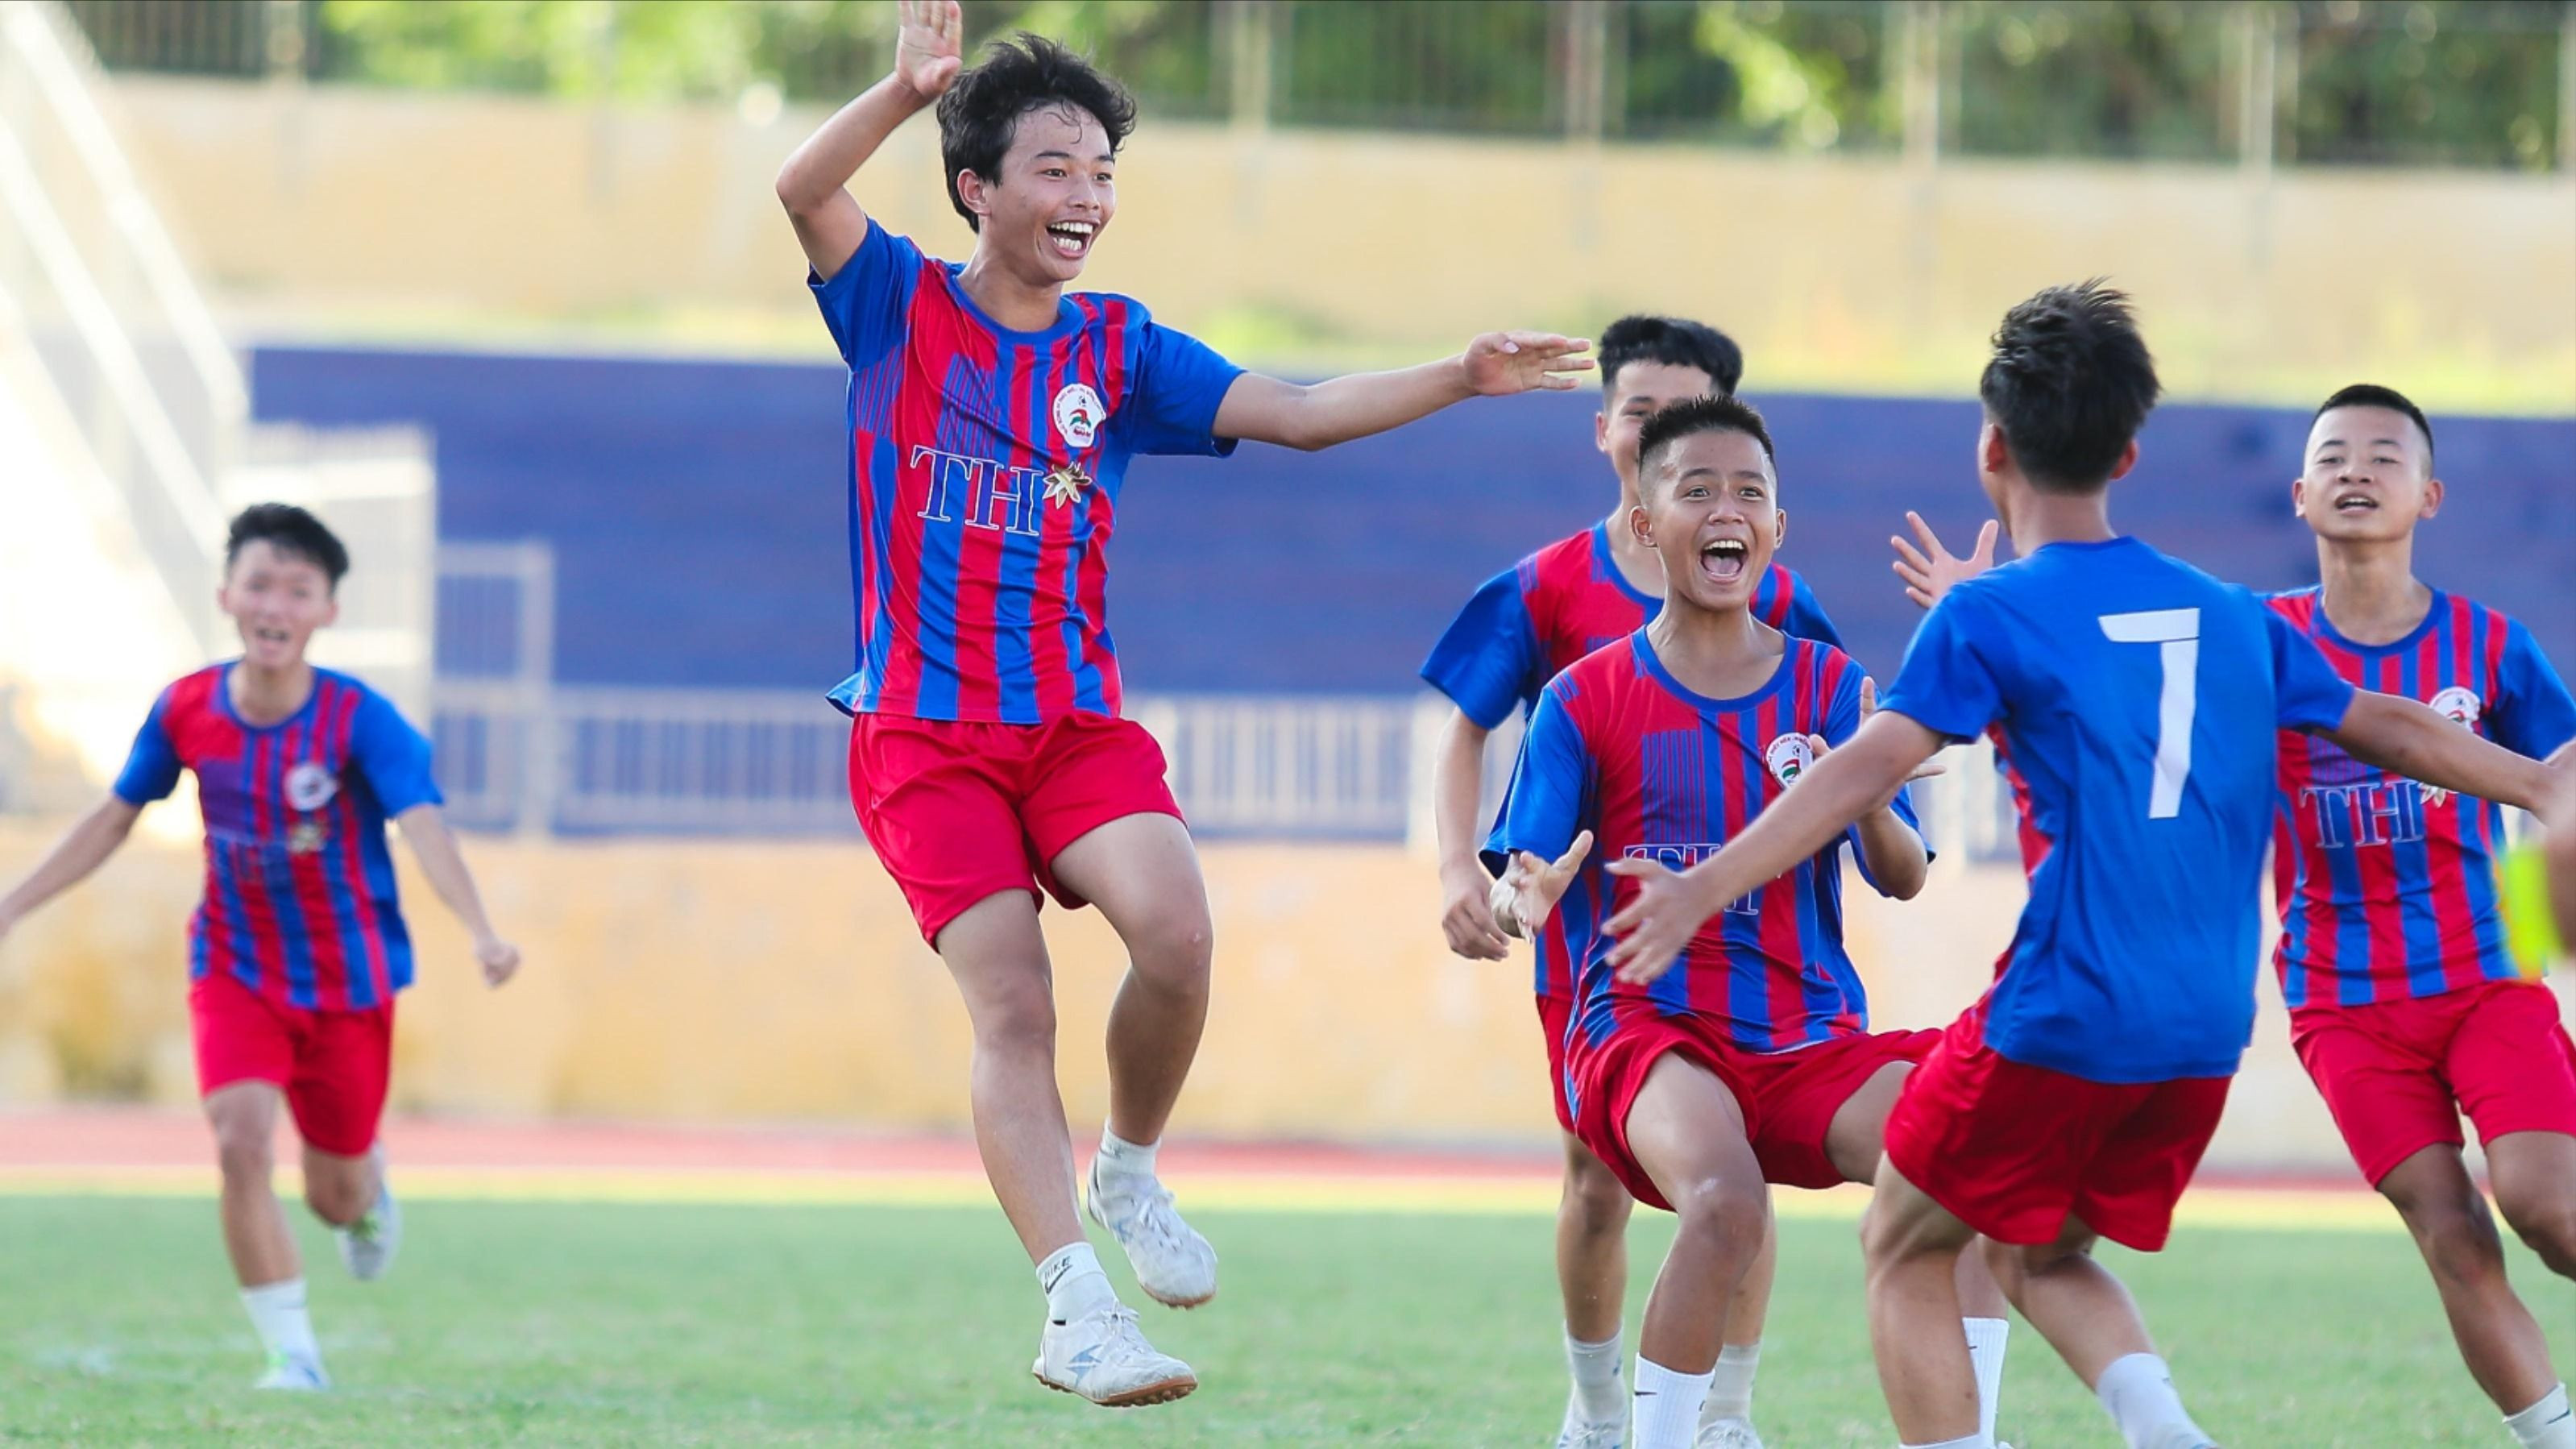 Giải Bóng đá Thiếu niên nhi đồng Cúp Báo Nghệ An: Cơ hội để các cầu thủ nhí lọt vào tầm ngắm các nhà tuyển trạch 